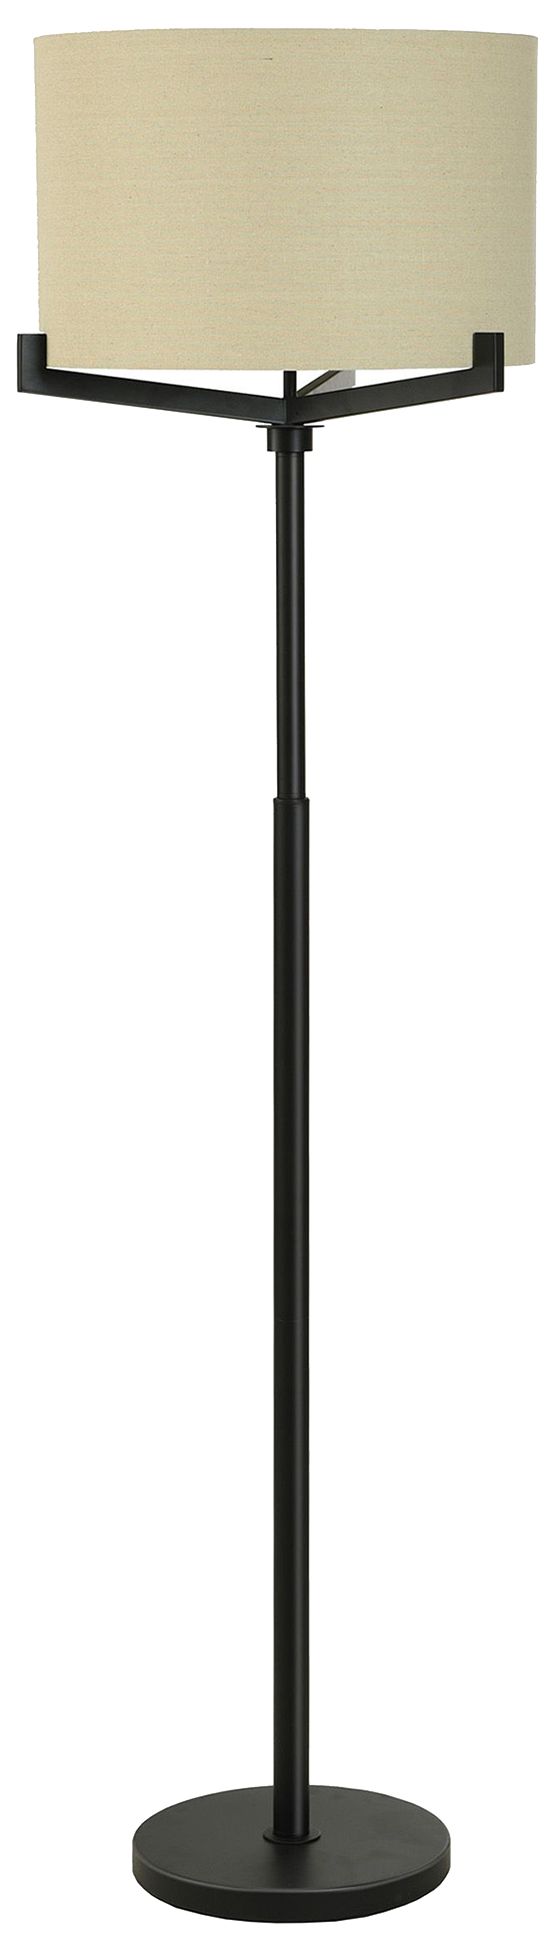 63" High Brushed Black Multi Arm Industrial Floor Lamp